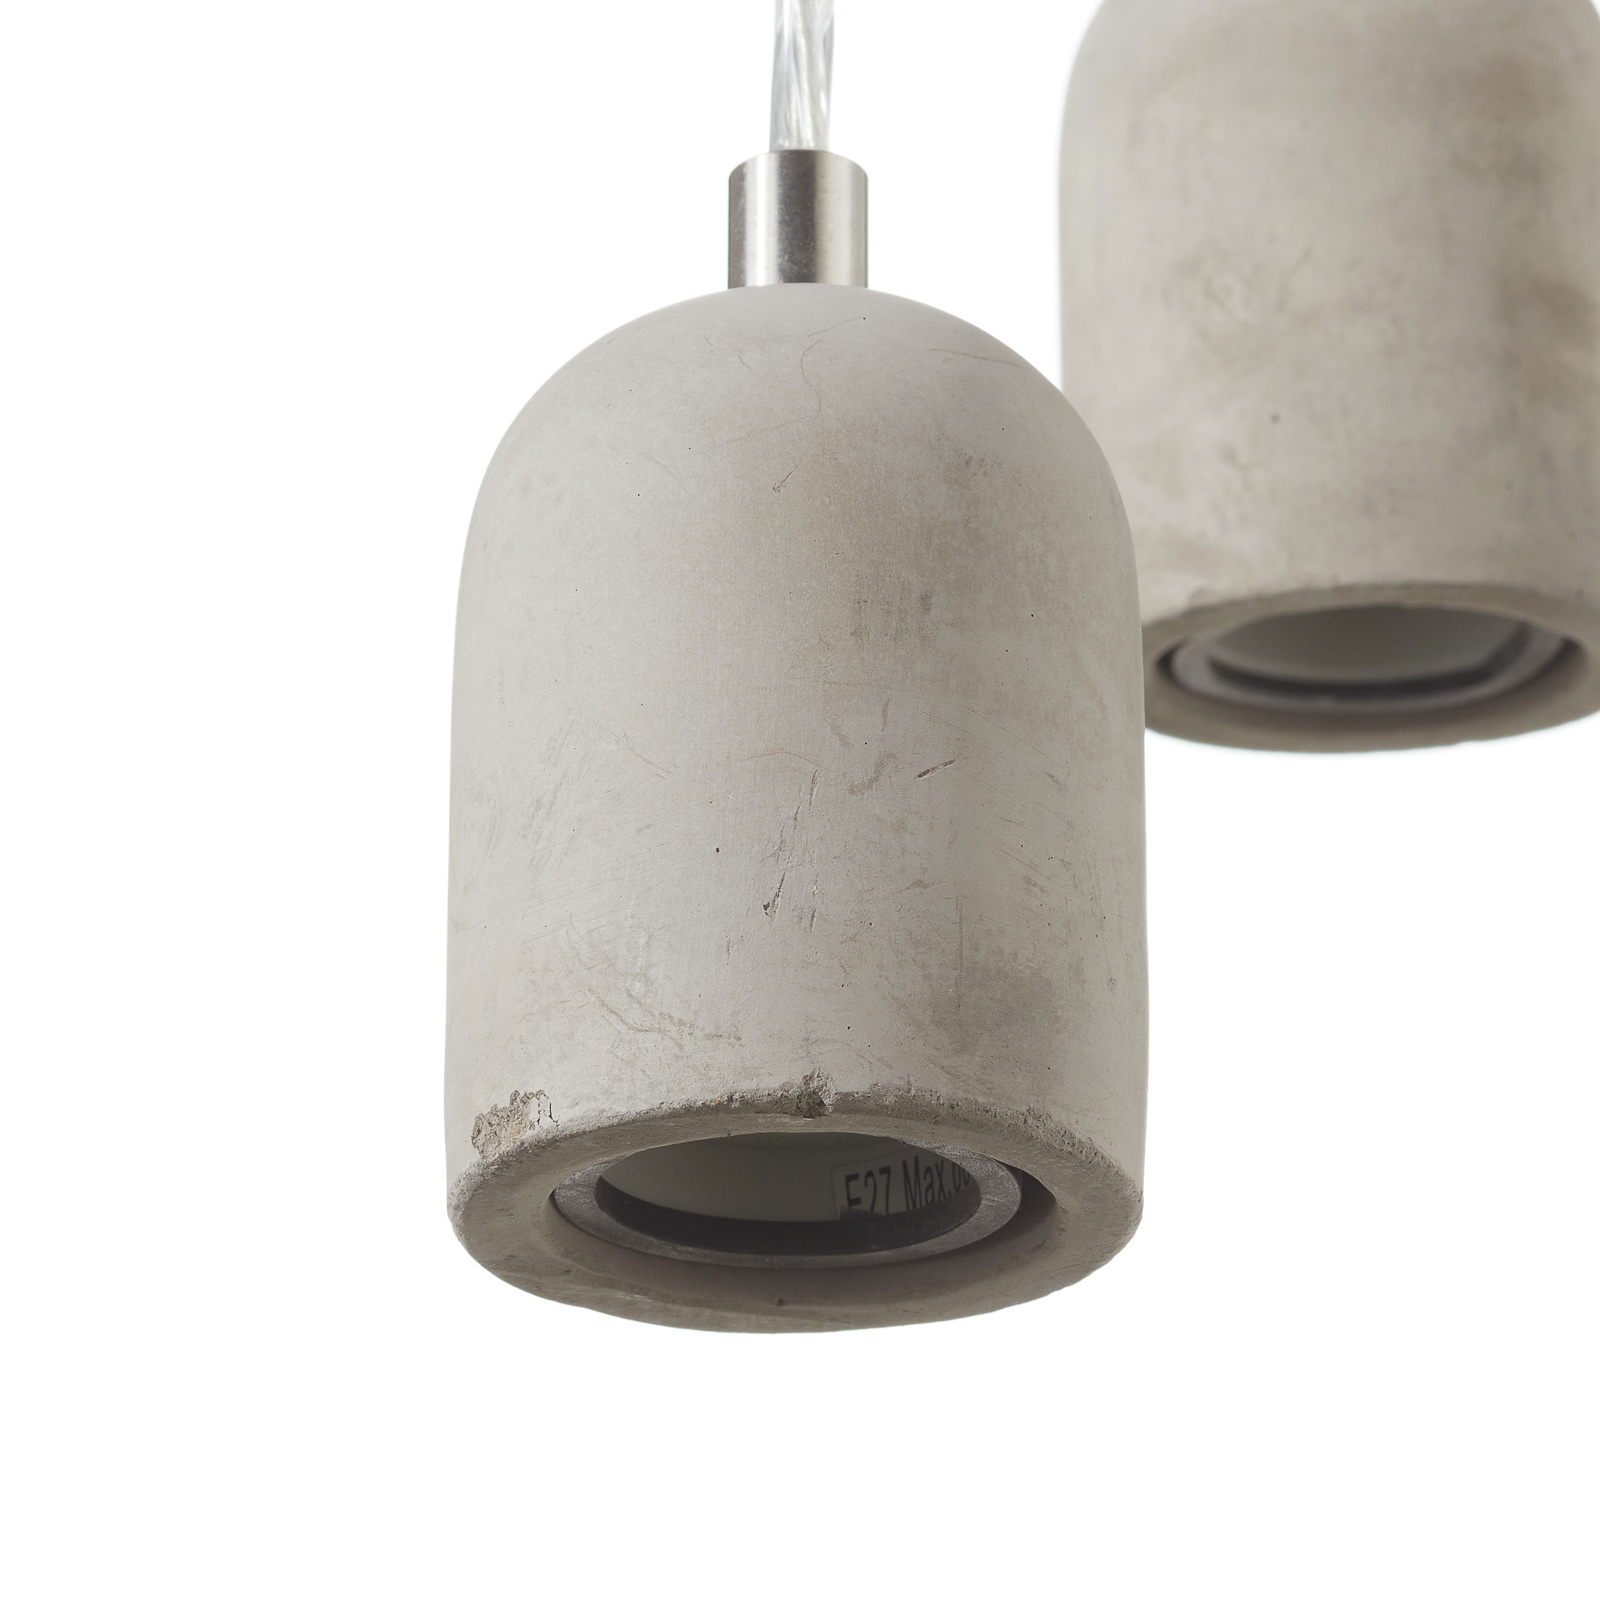 Lámpara colgante Silvares en diseño minimalista